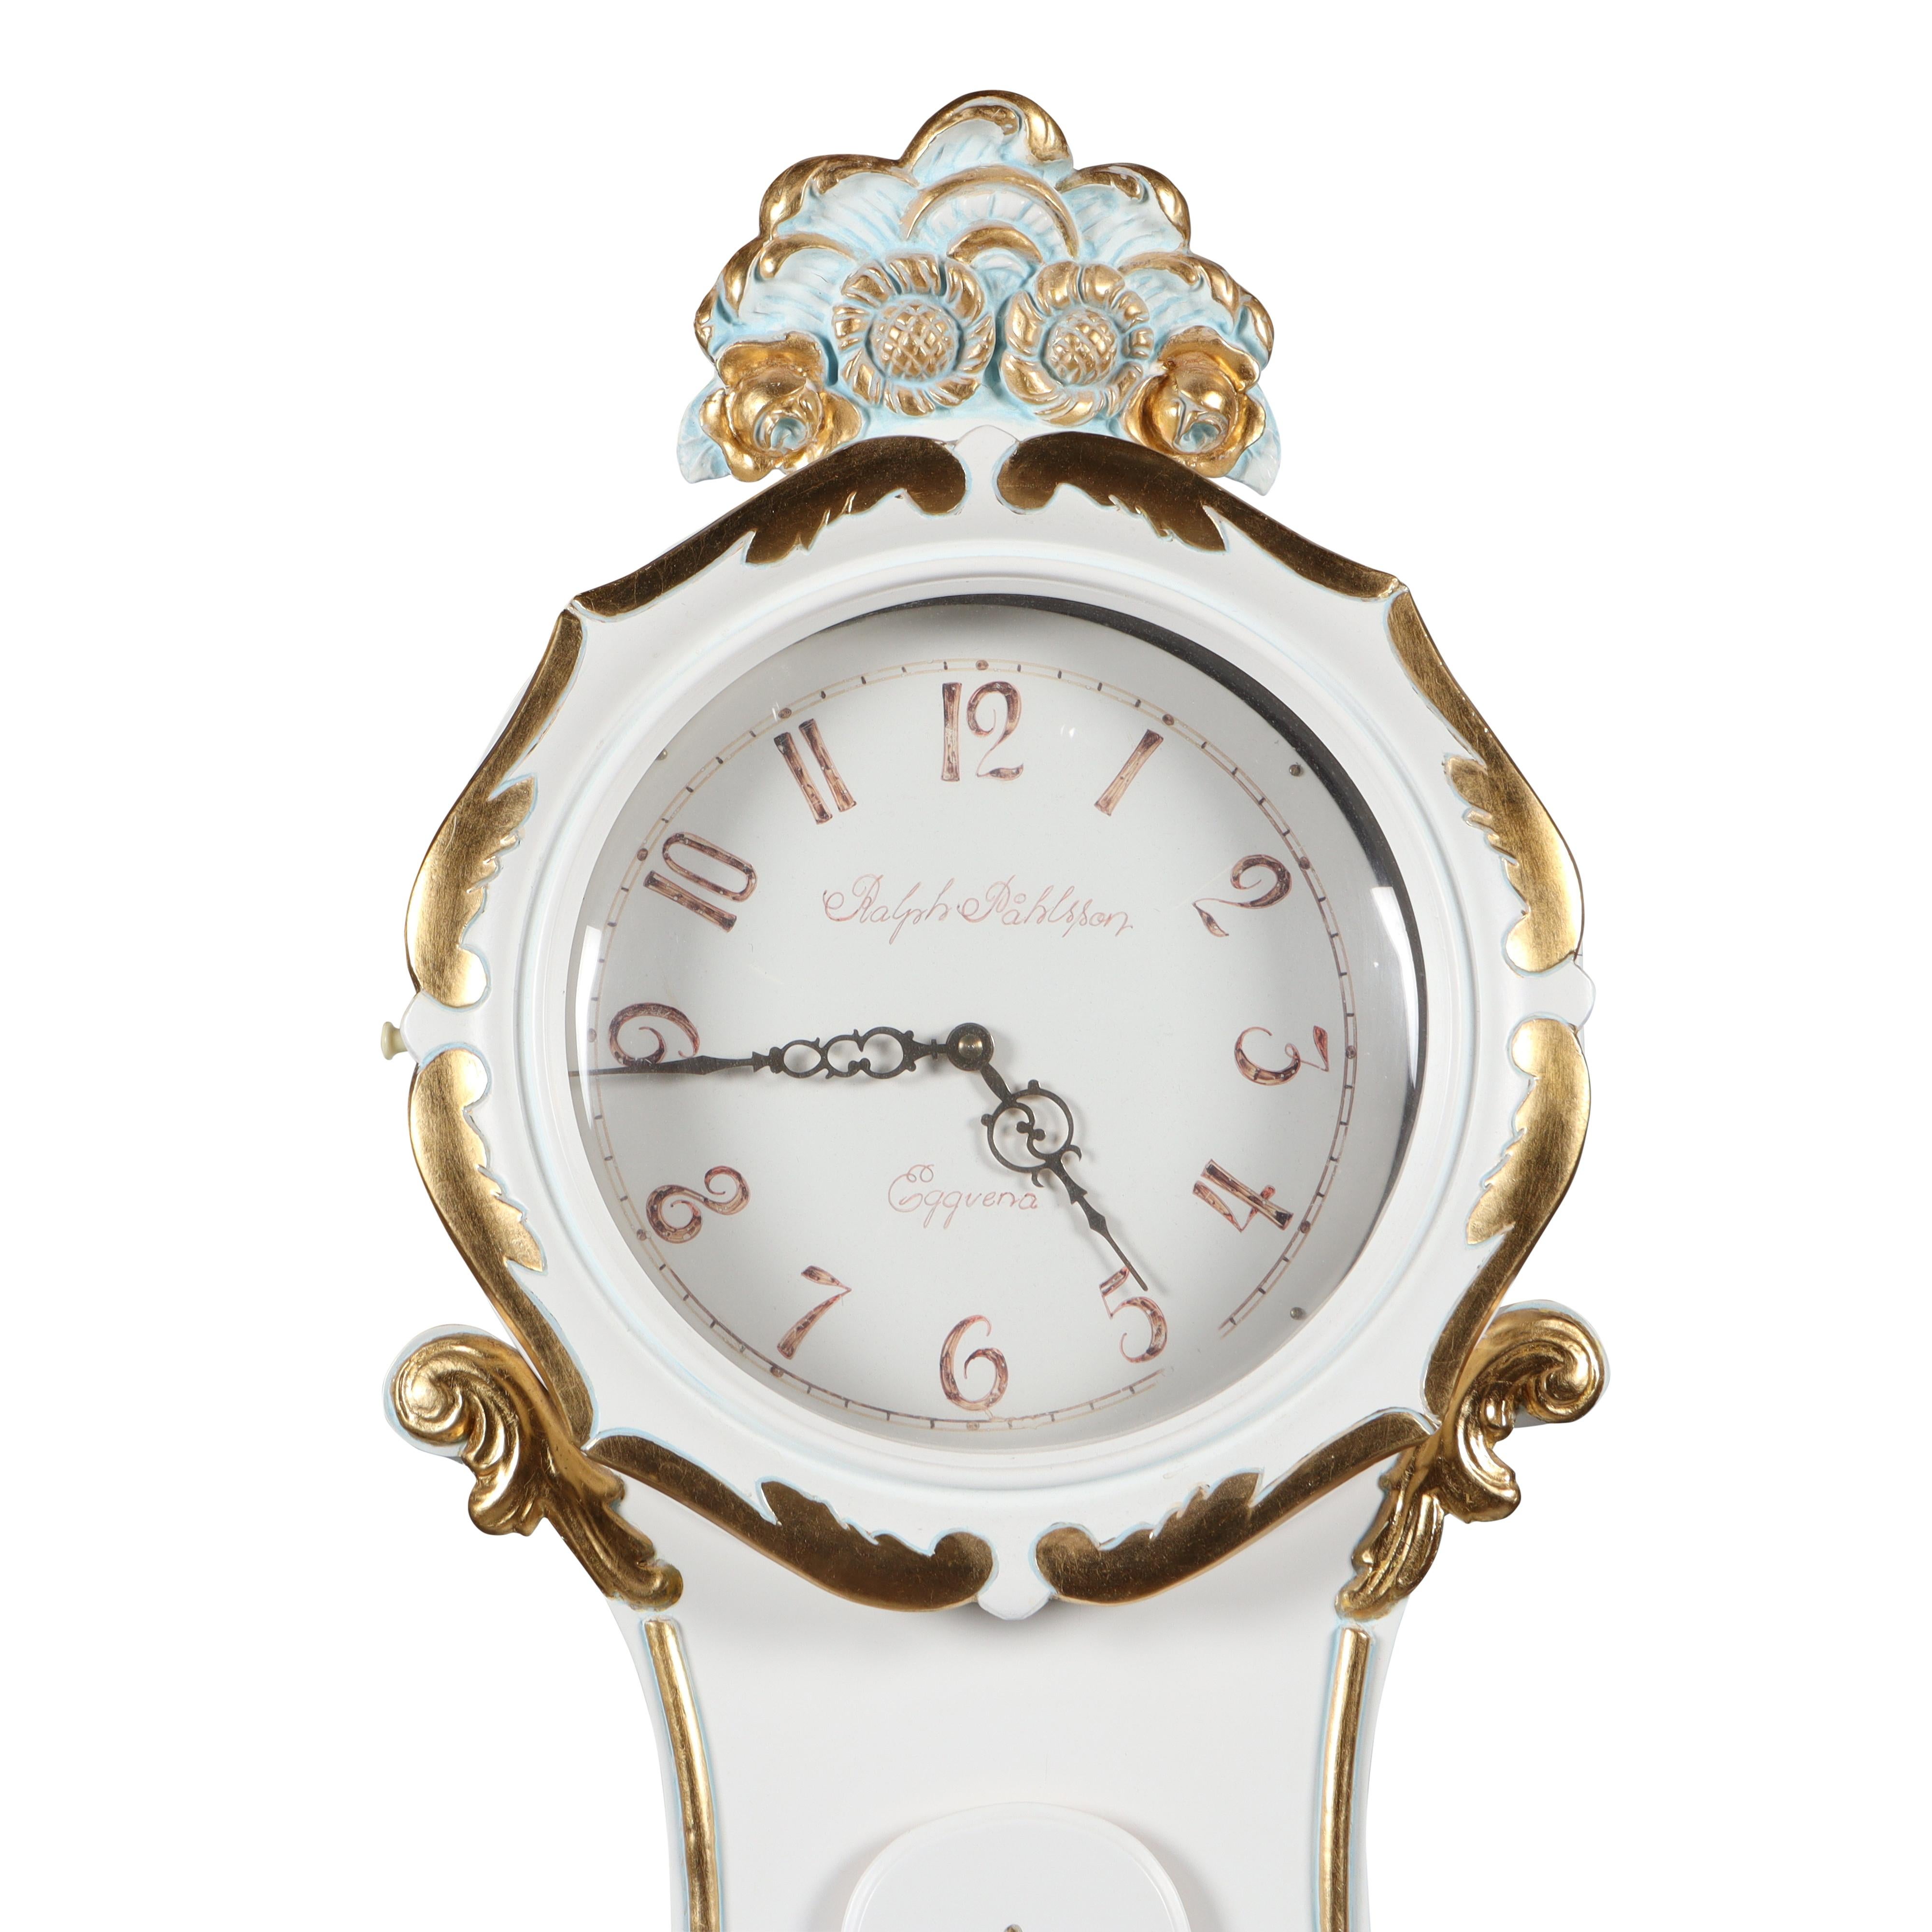 Horloge suédoise Mora avec détails floraux décoratifs peints à la main et détails sculptés. Mécanisme d'horlogerie de type Longcase fonctionnant avec un pendule, deux poids et une cloche sonnant l'heure.
Largeur:54cm / 21.3